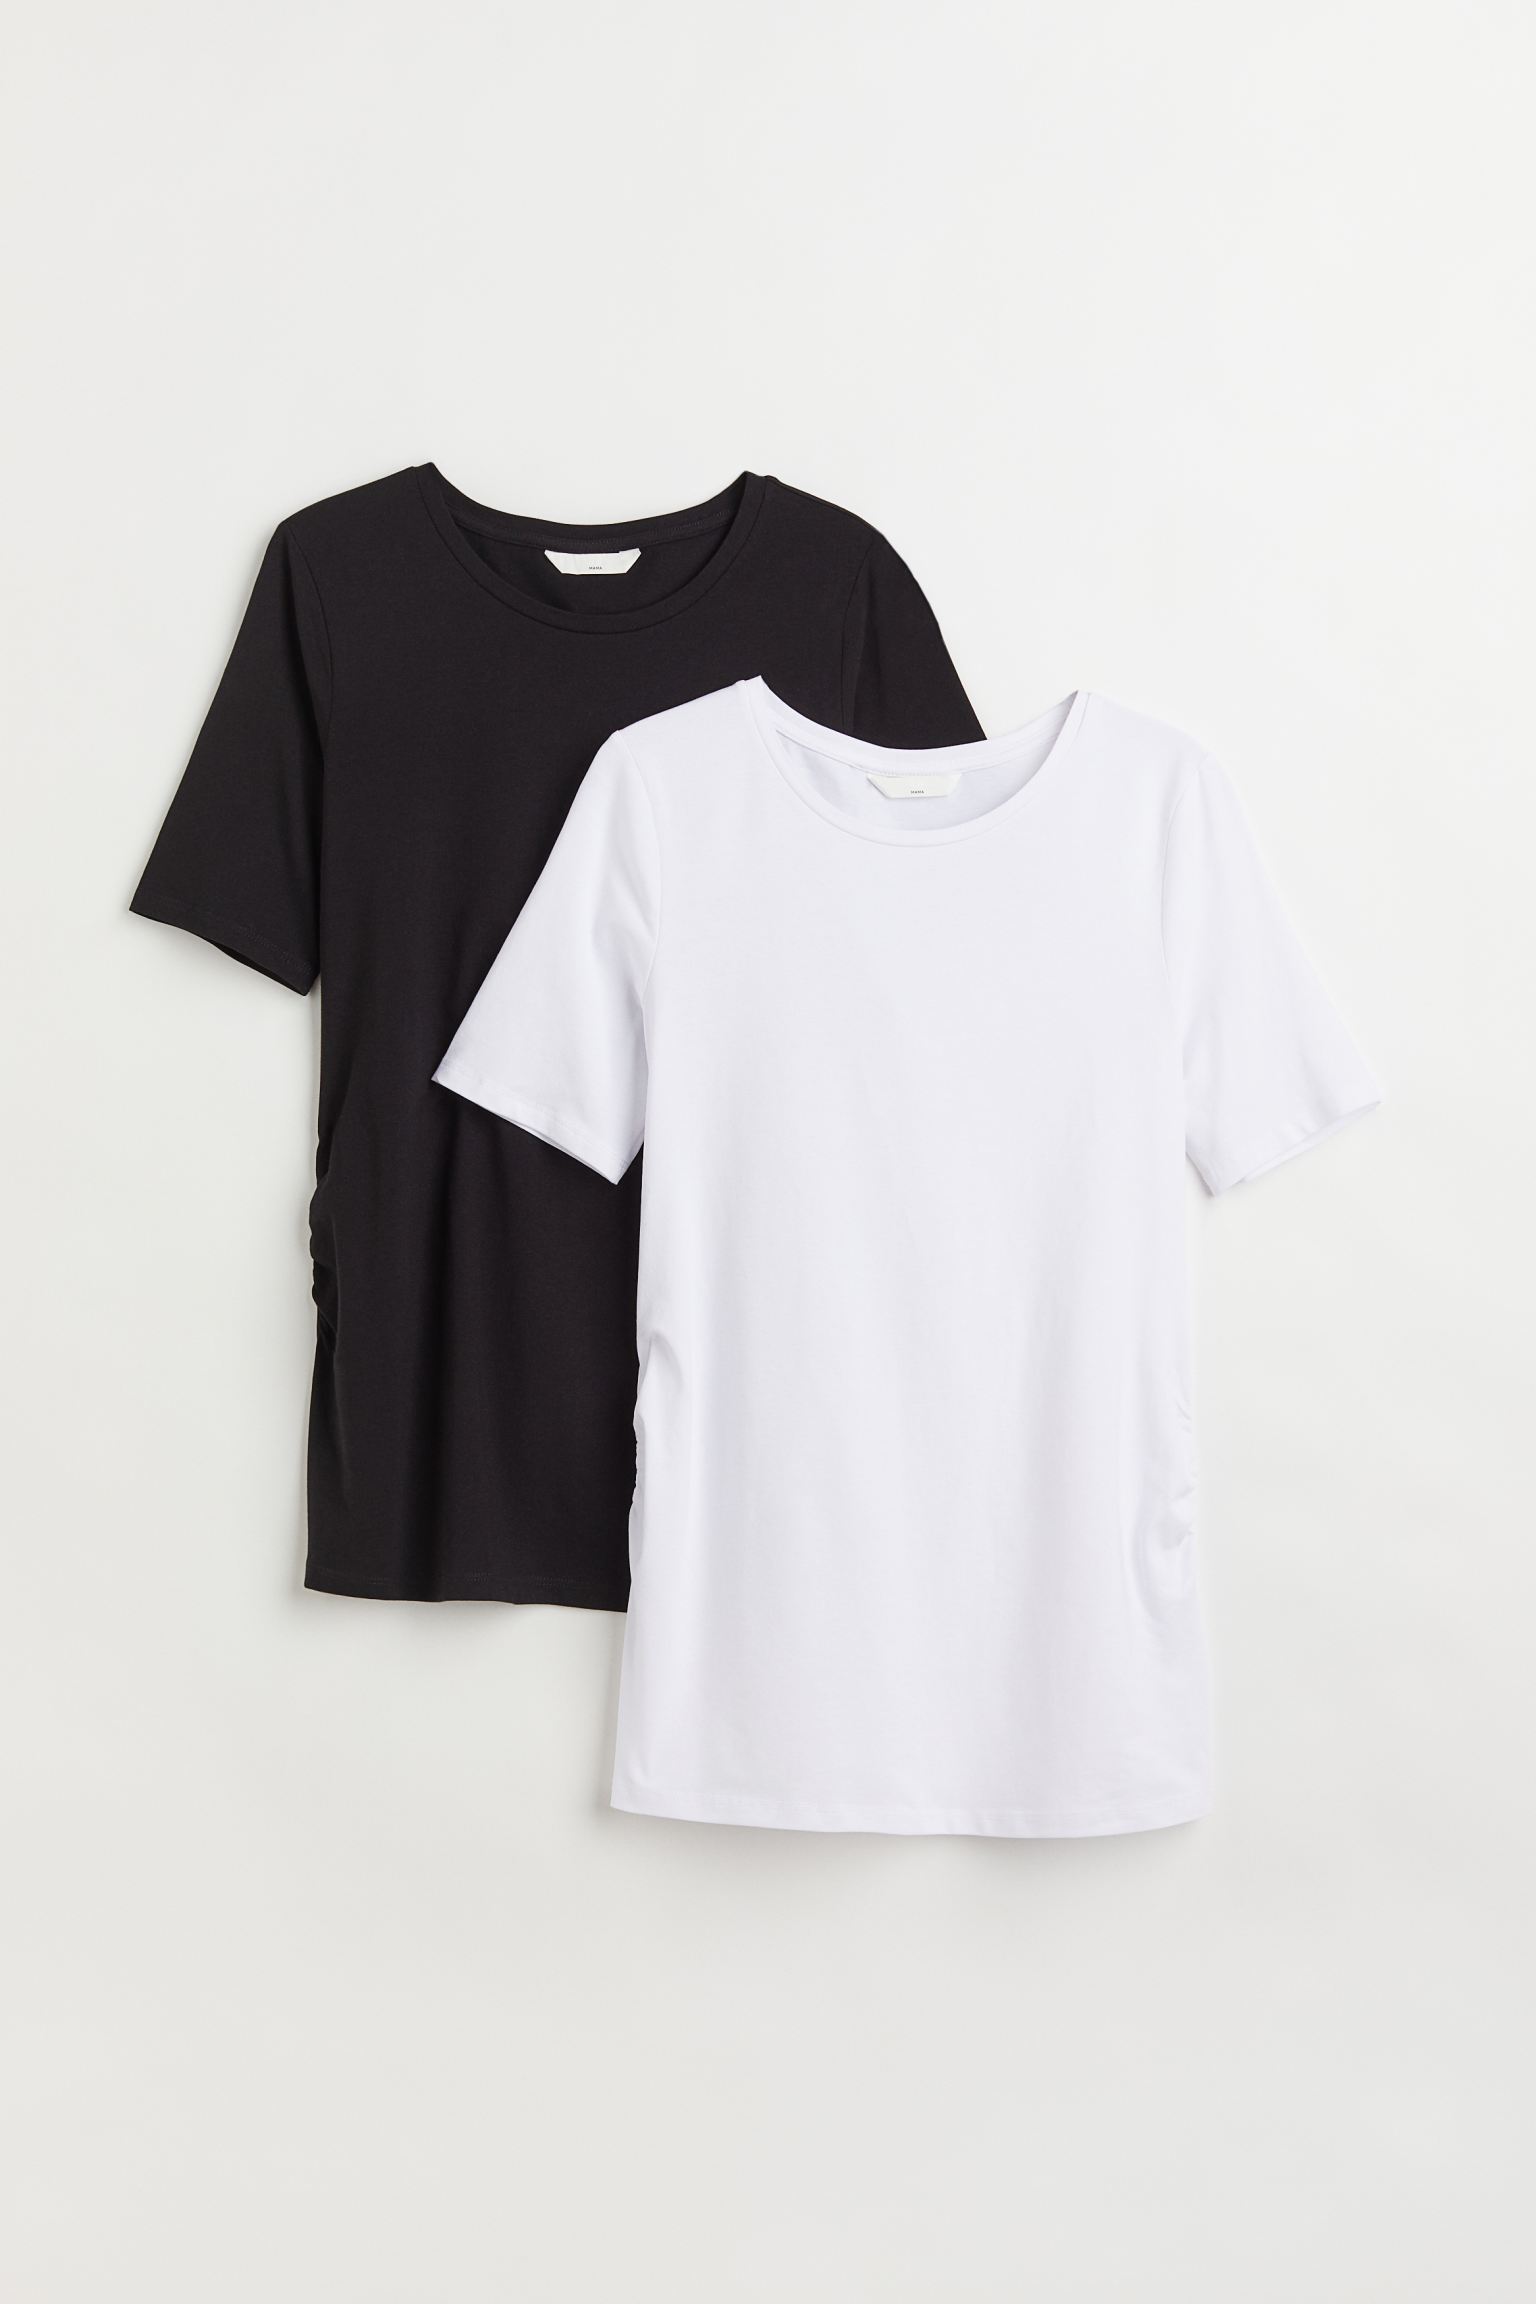 Комплект футболок женских H&M 1090126003 черных XL (доставка из-за рубежа)